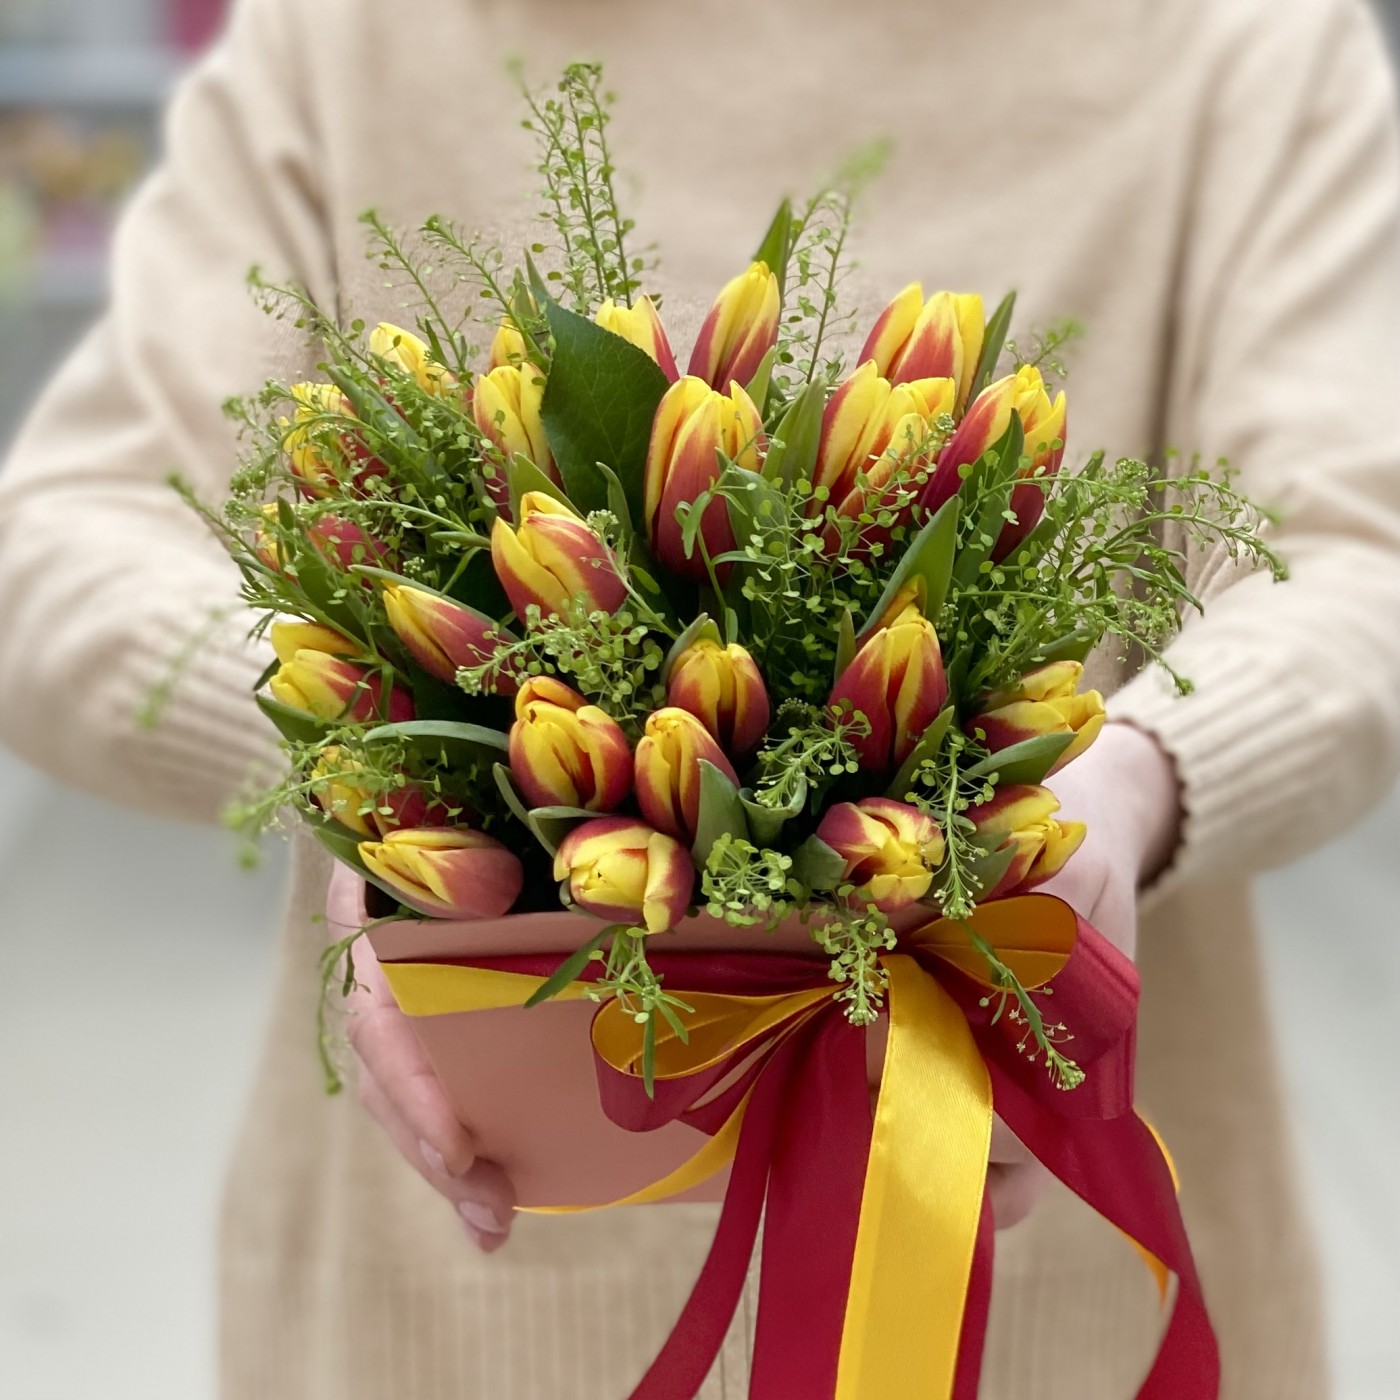 Красно-жёлтые тюльпаны в коробке с зеленью